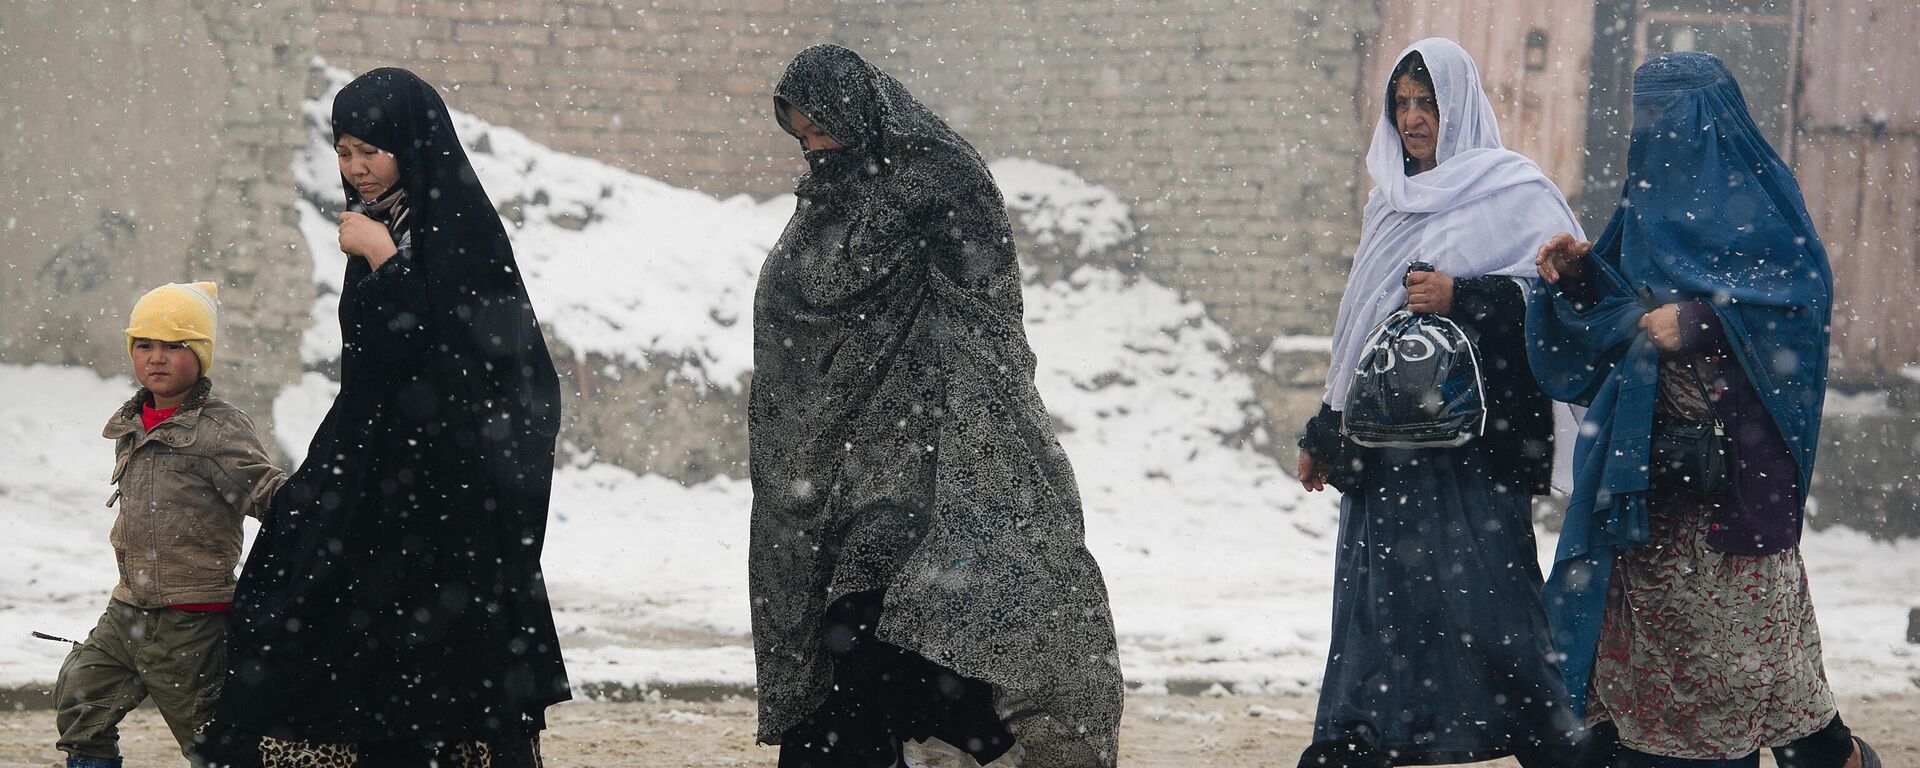 Афганские жители идут по улице во время снегопада в Кабуле, архивное фото - Sputnik Тоҷикистон, 1920, 27.10.2021